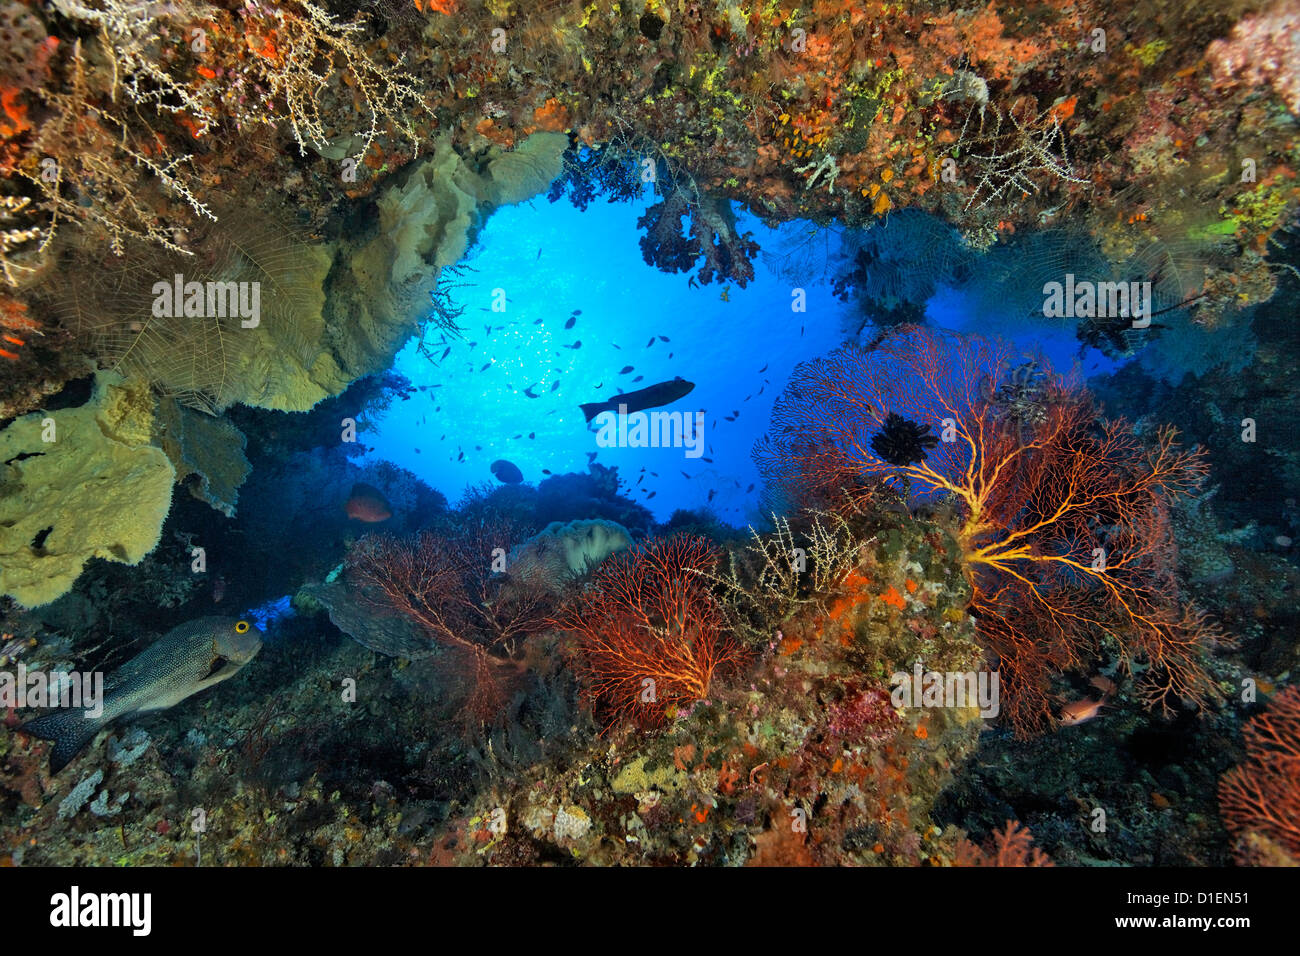 Grotta con i coralli e pesci, vicino a Padre barriere coralline, Bismark Mare, Papua Nuova Guinea, ripresa subacquea Foto Stock